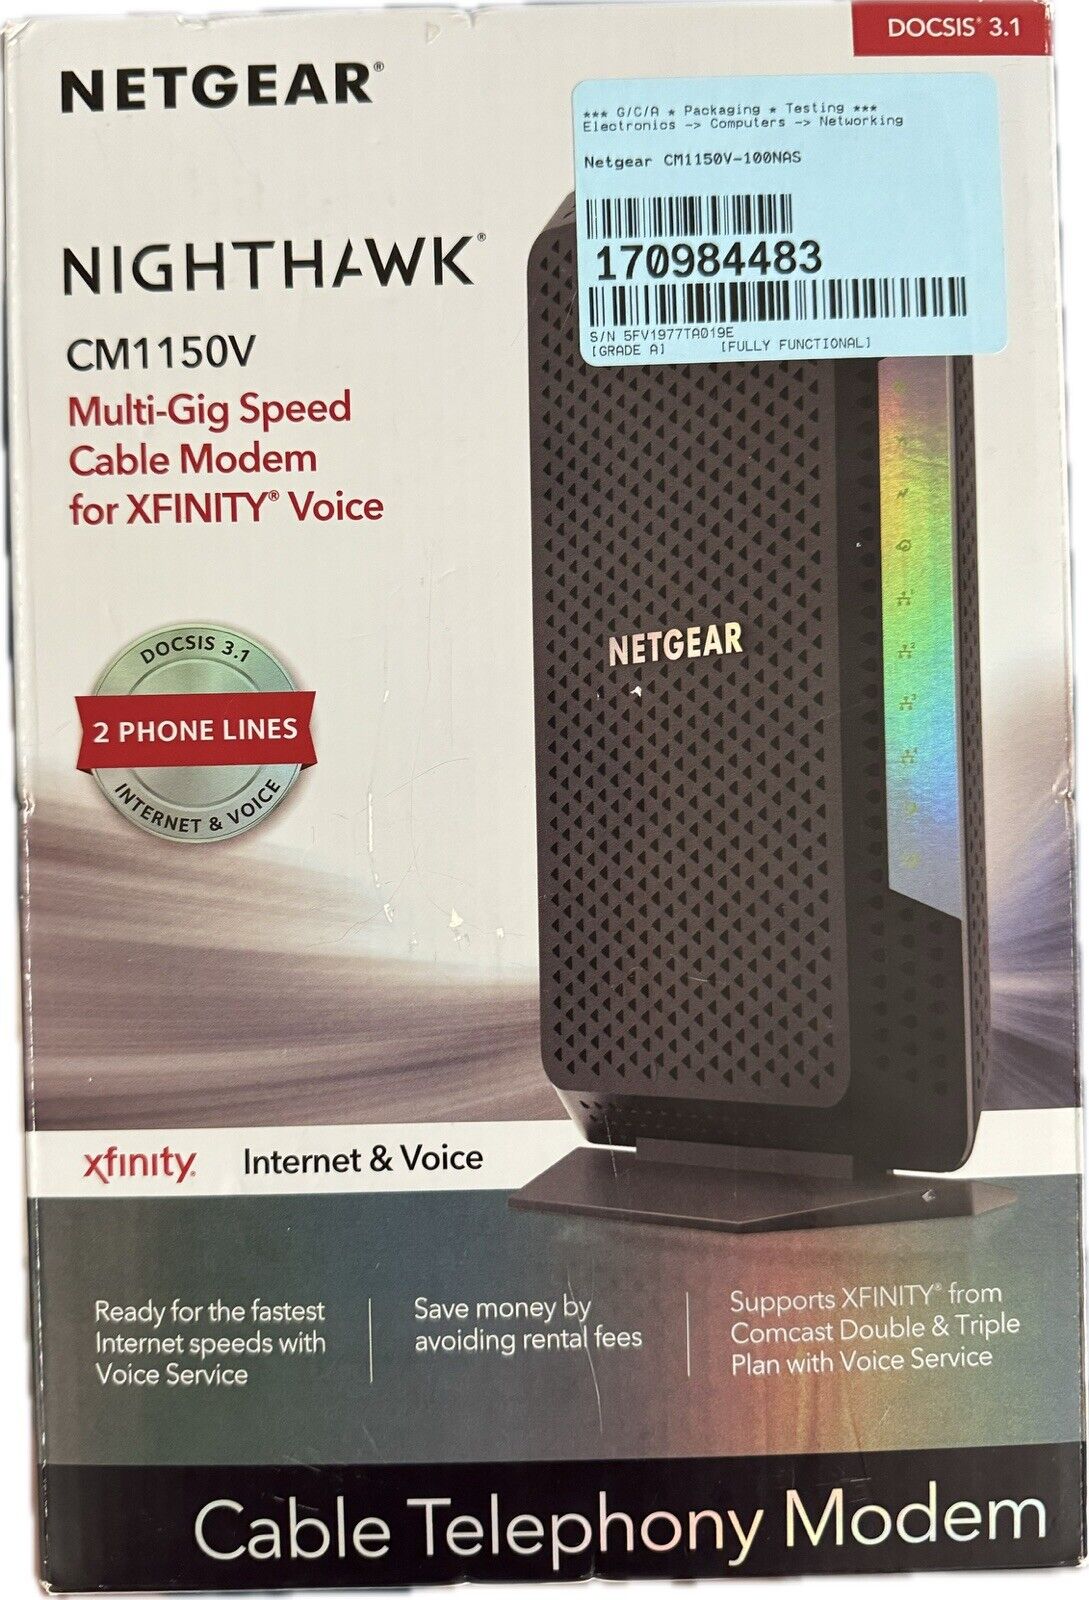 NETGEAR CM1150V Nighthawk Multi-Gig Speed Cable Modem for XFINITY Voice